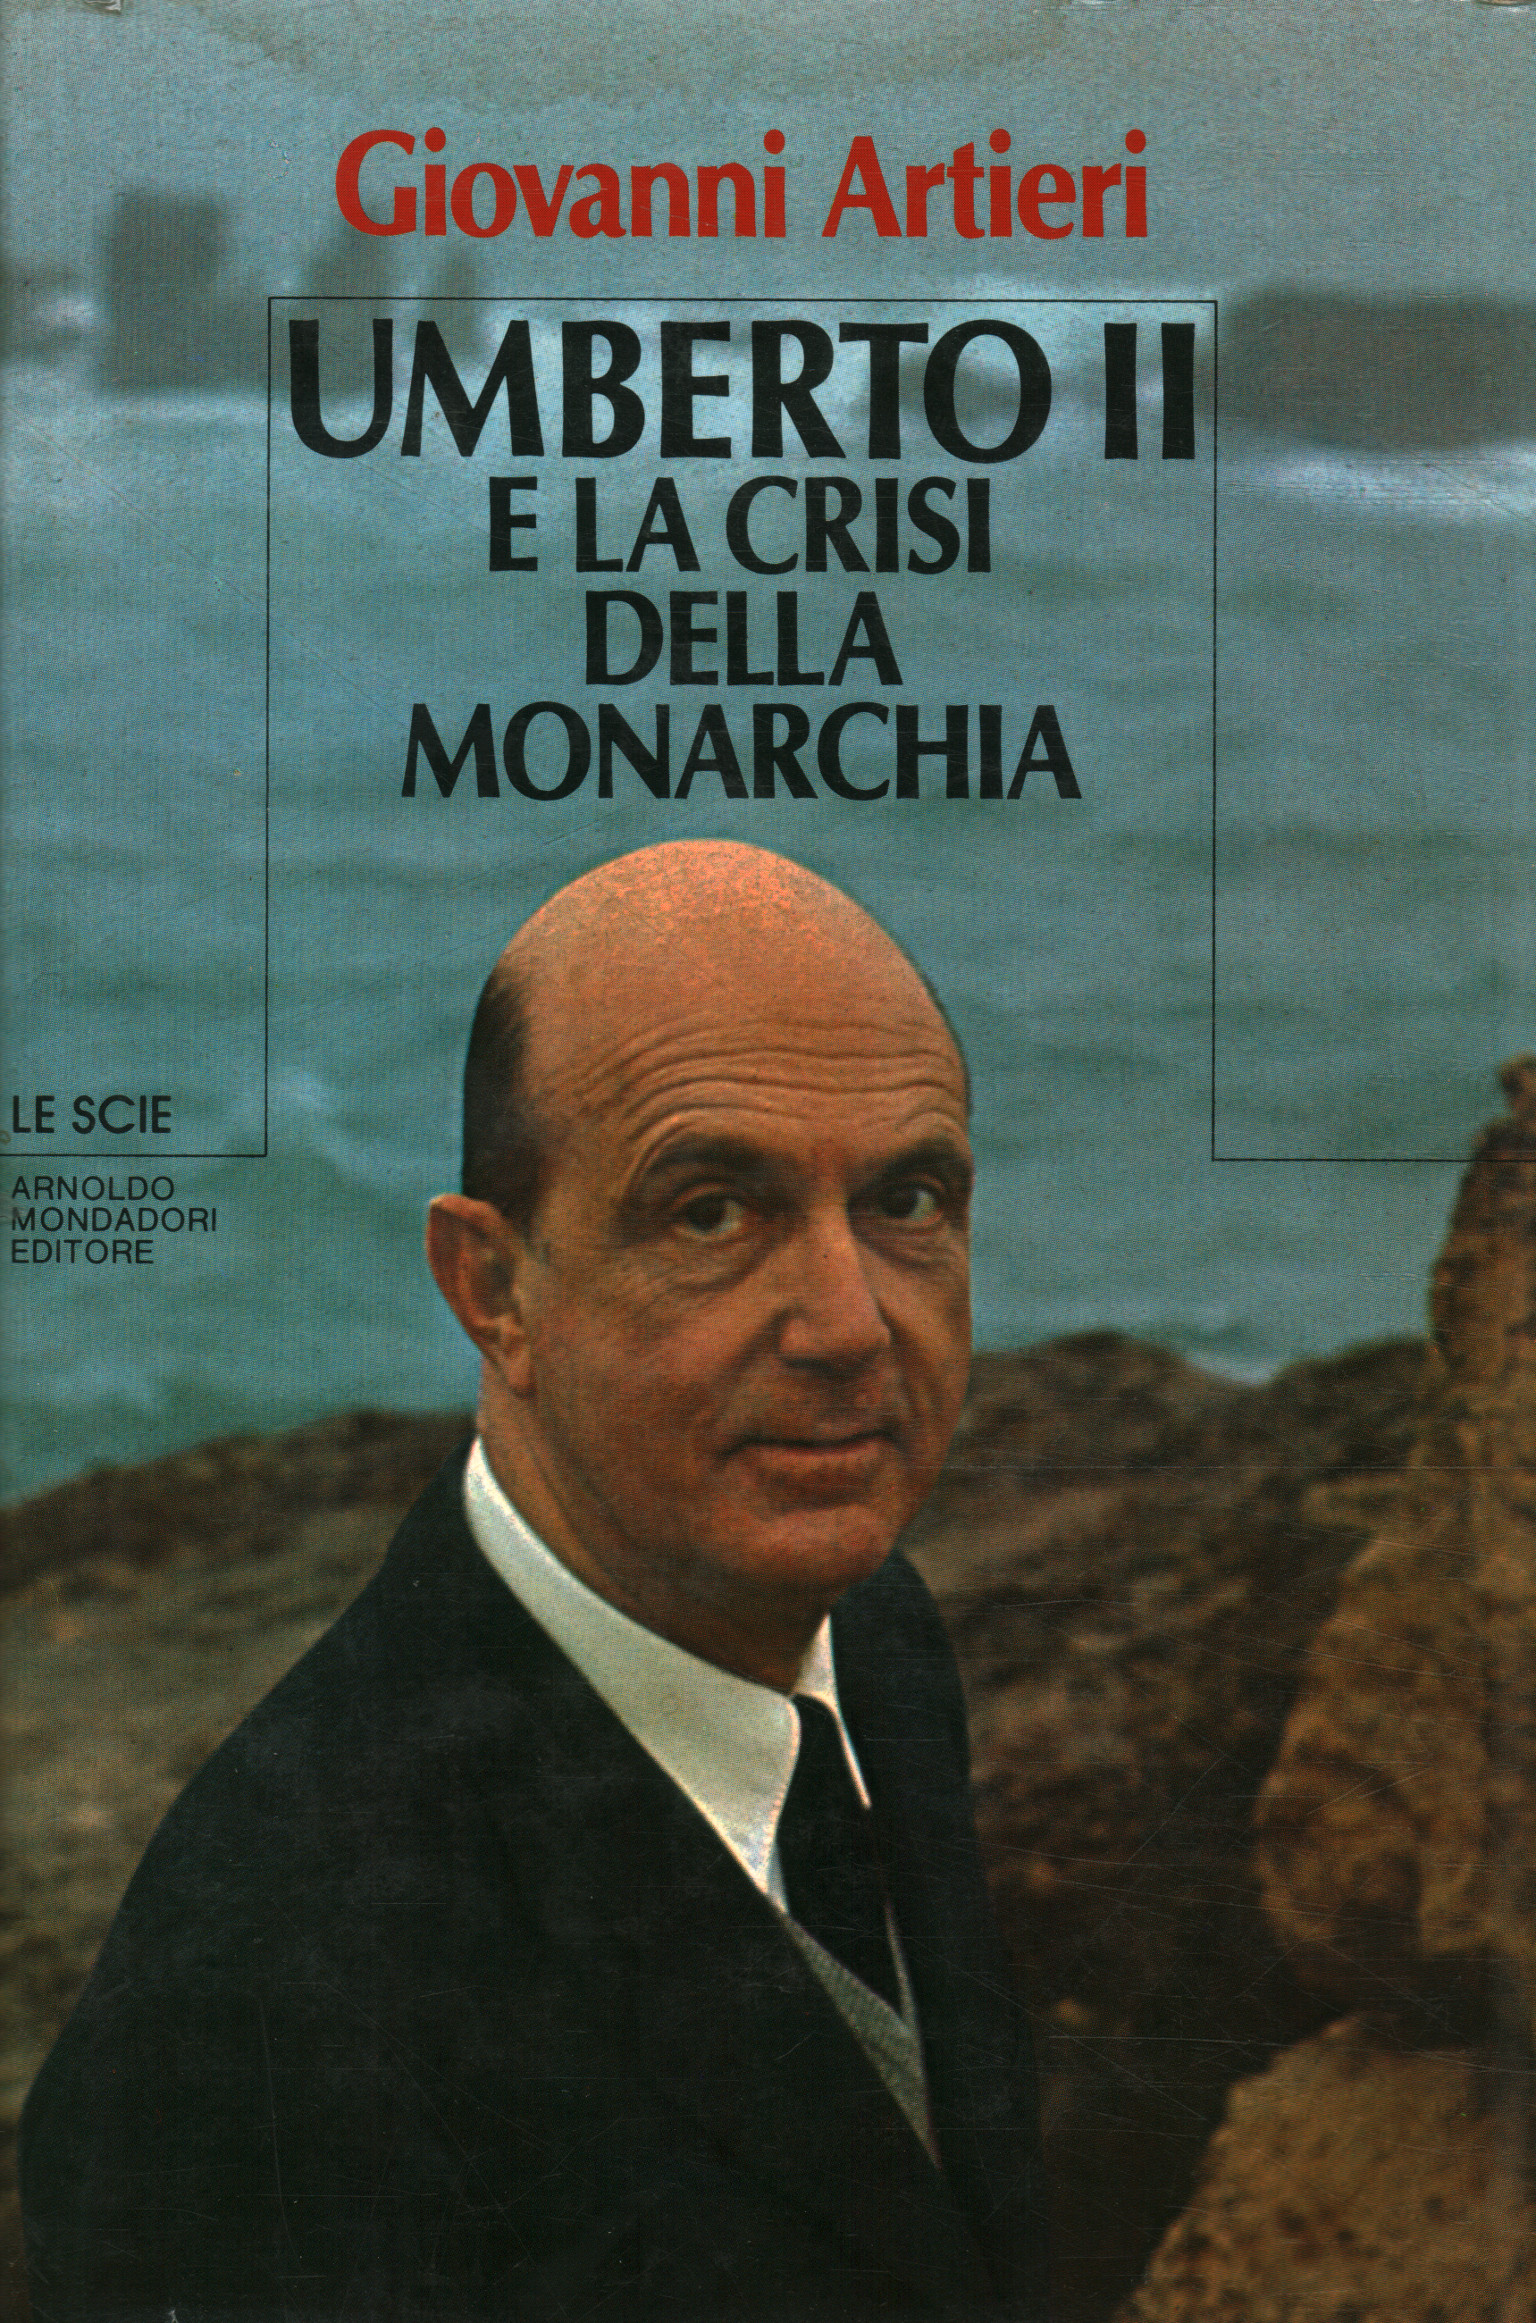 Umberto II und die Krise der Monarchie